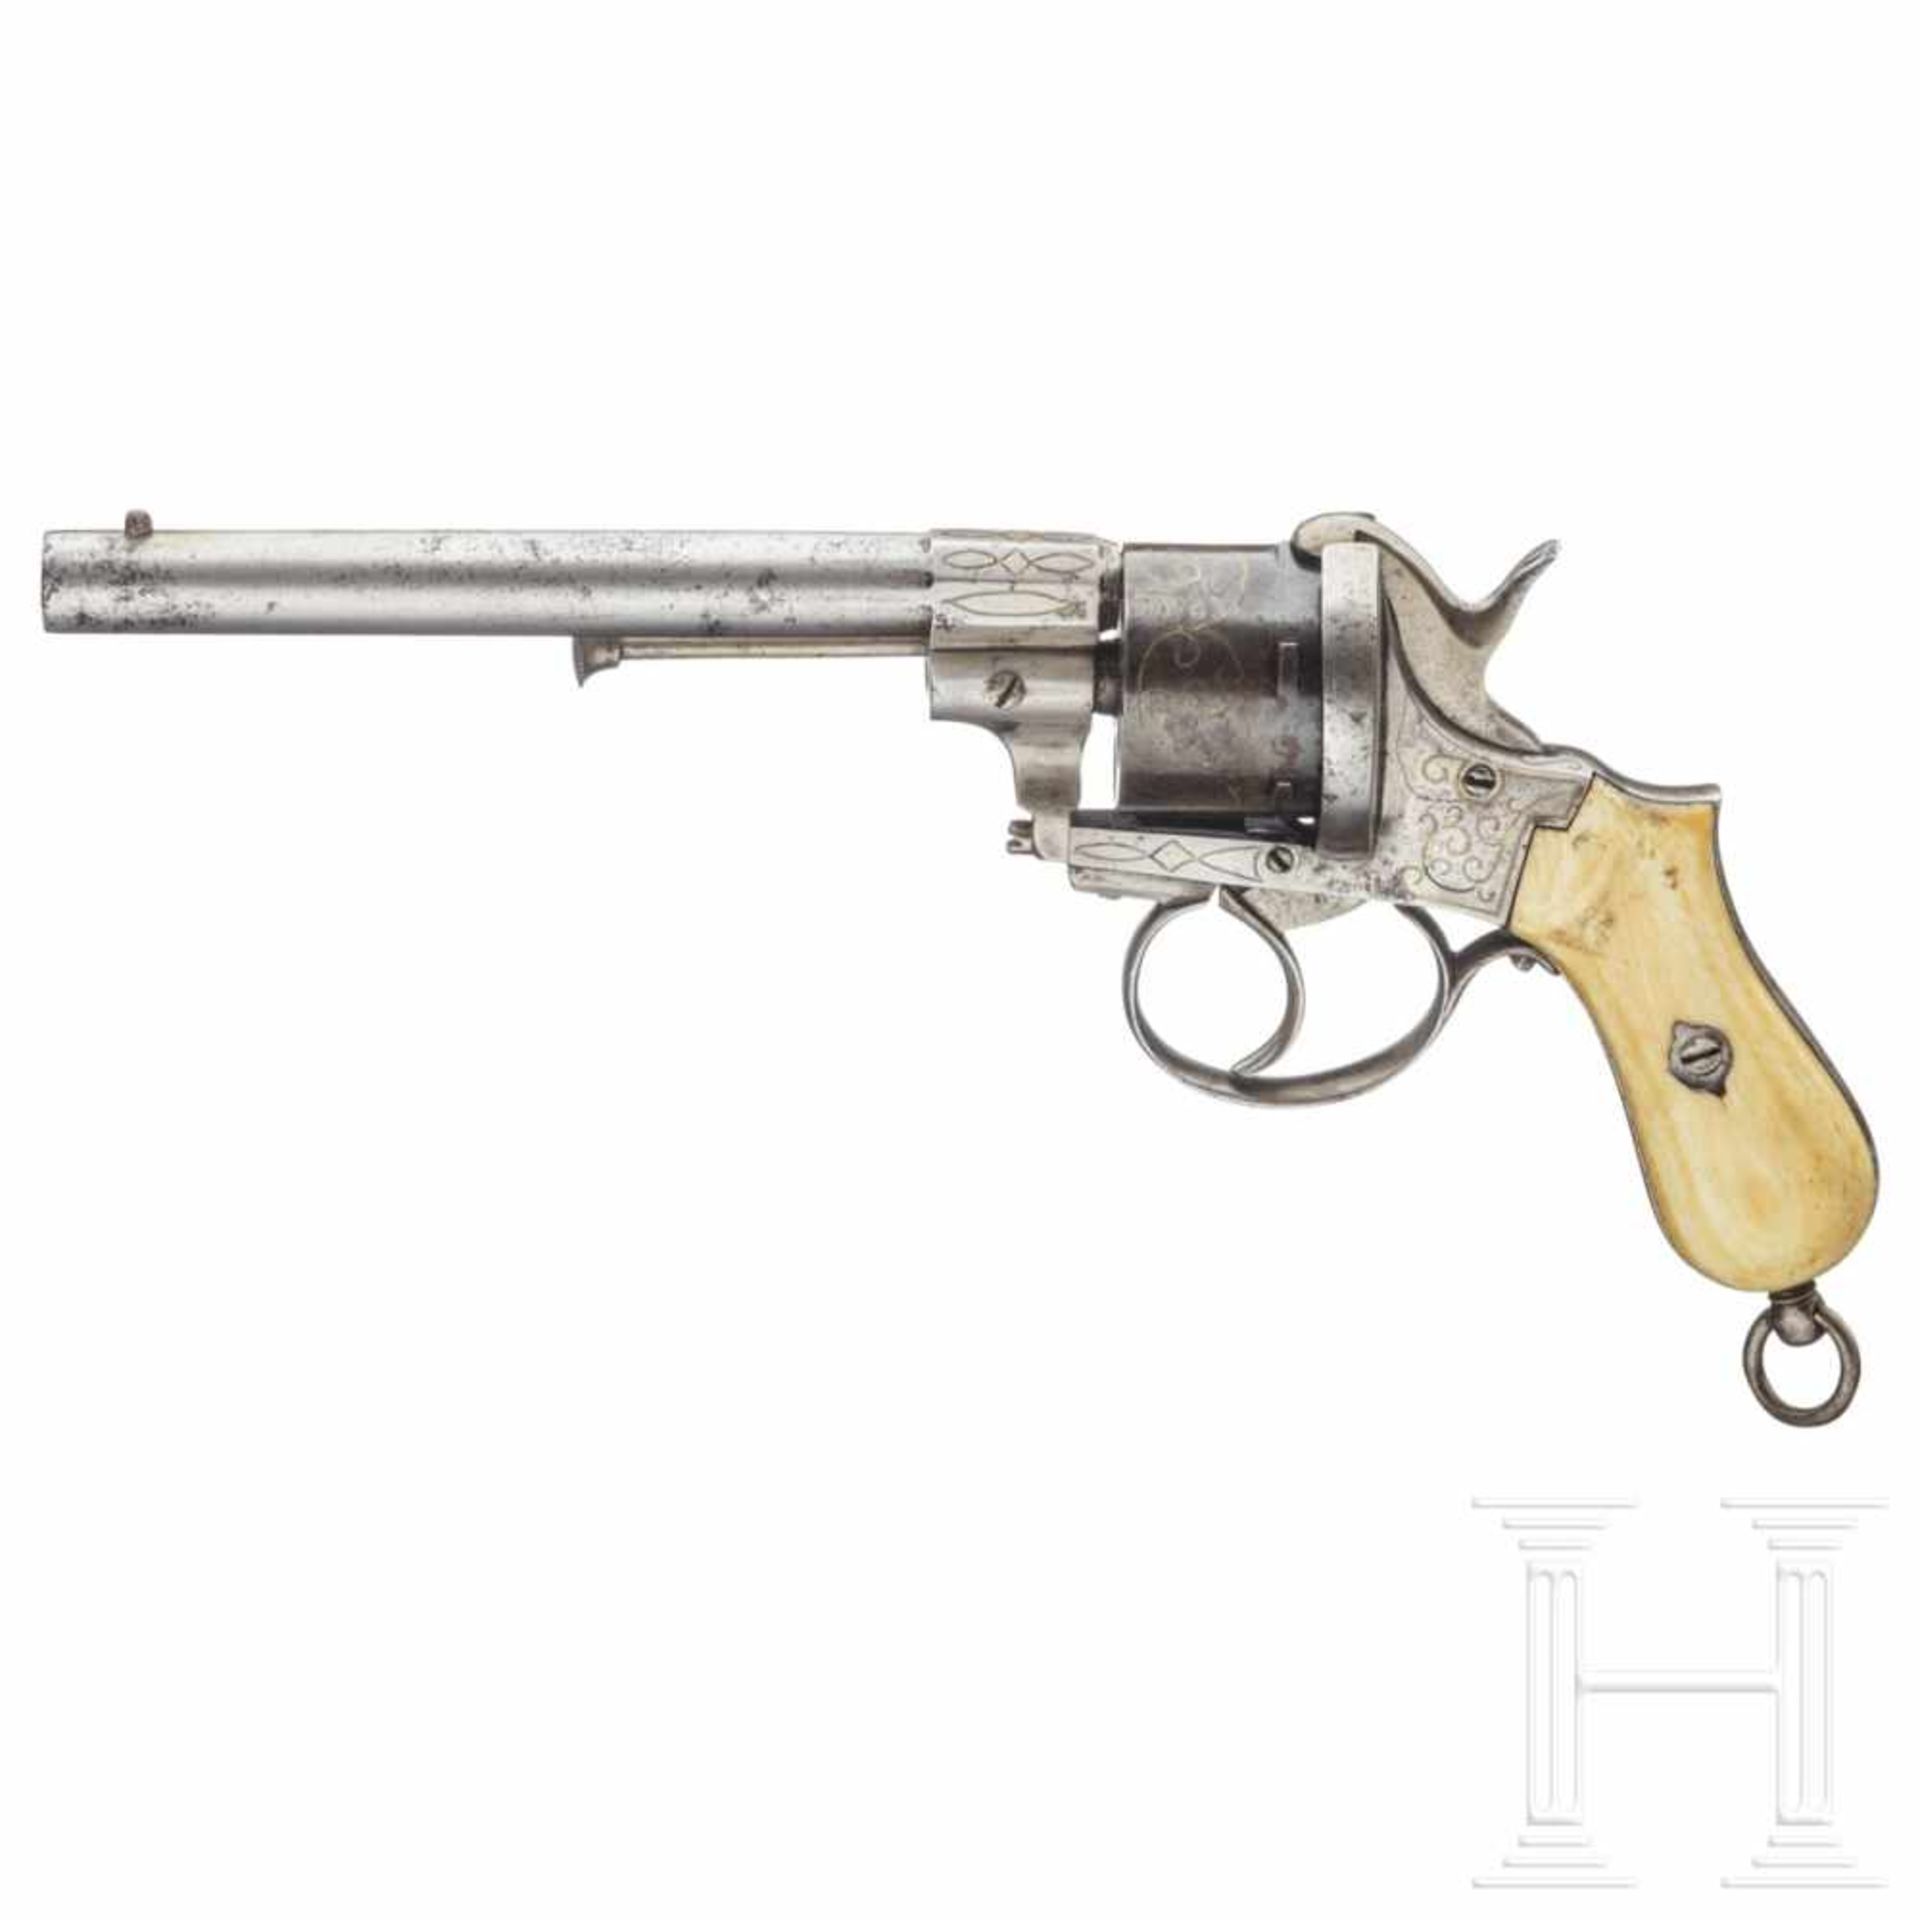 Belgien - Lefaucheuxrevolver, um 1860Kal. 9 mm Lefaucheux, ohne Nr. Sechsschüssig, Waffe blank mit - Bild 2 aus 4